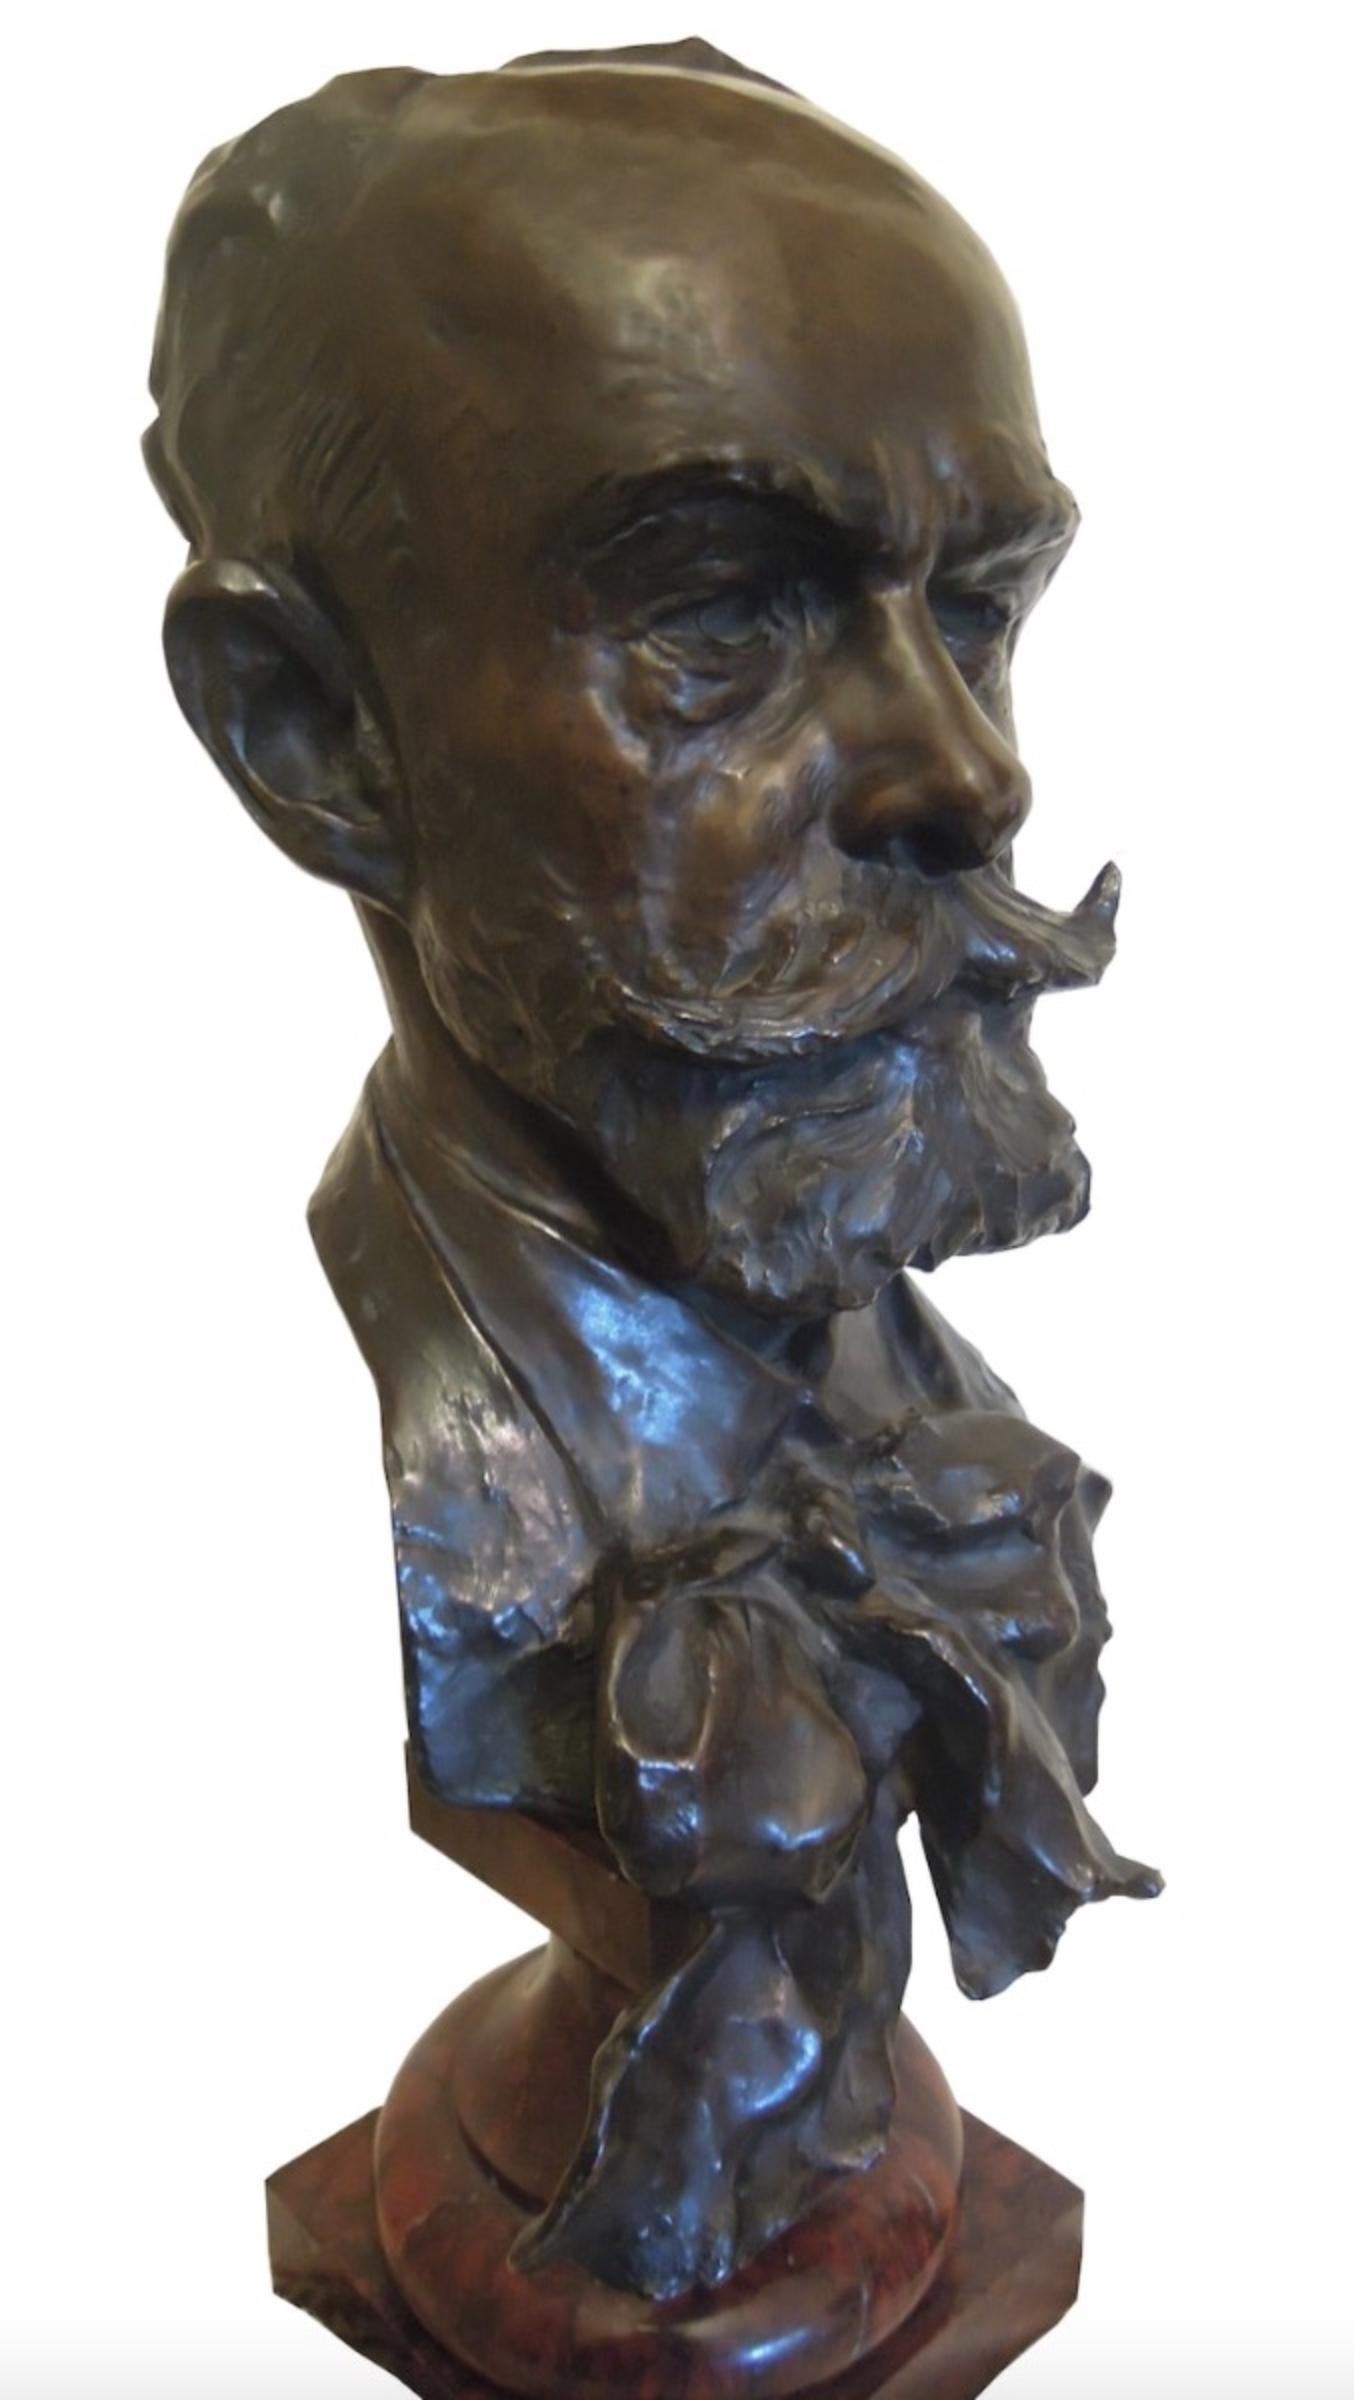 Head of a Gentleman - Bronze Sculpture by Julien Prosper Legastelois - 1894